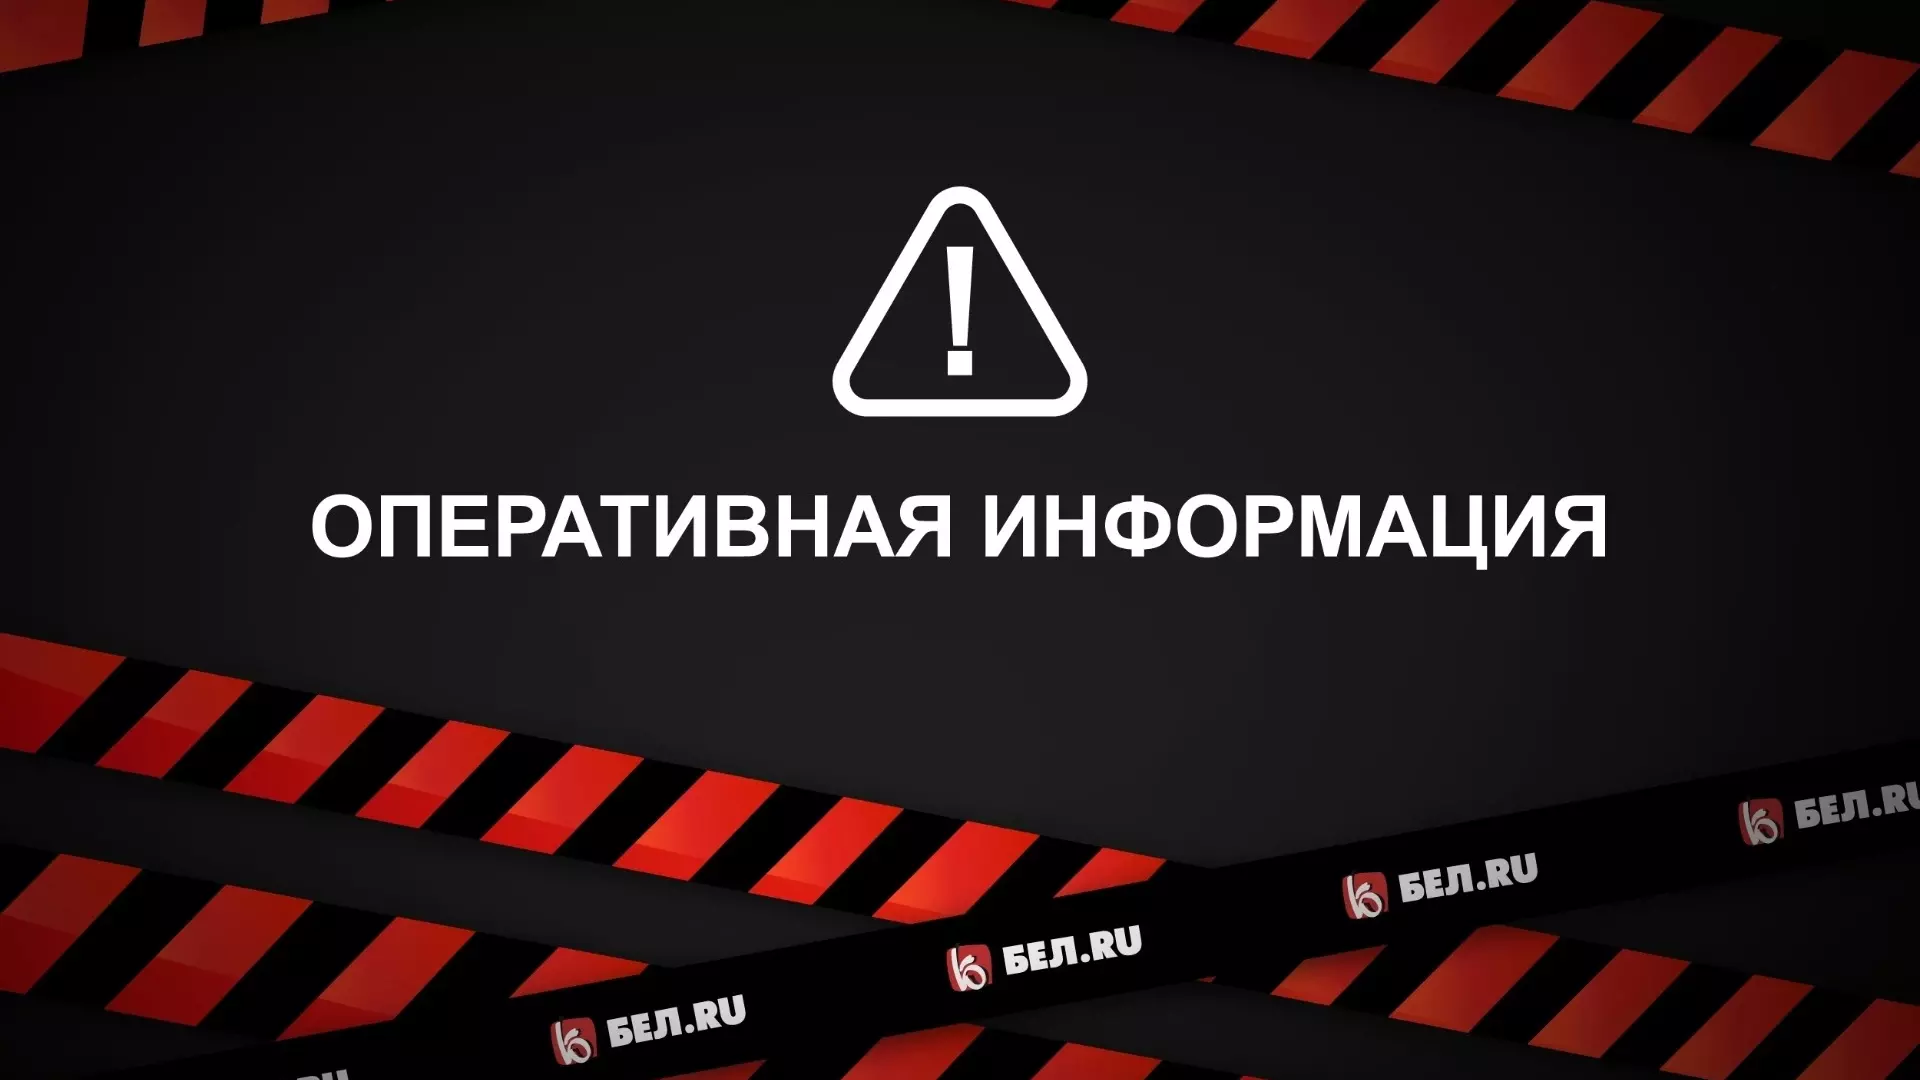 Ракетную опасность впервые объявили на всей территории Белгородской области